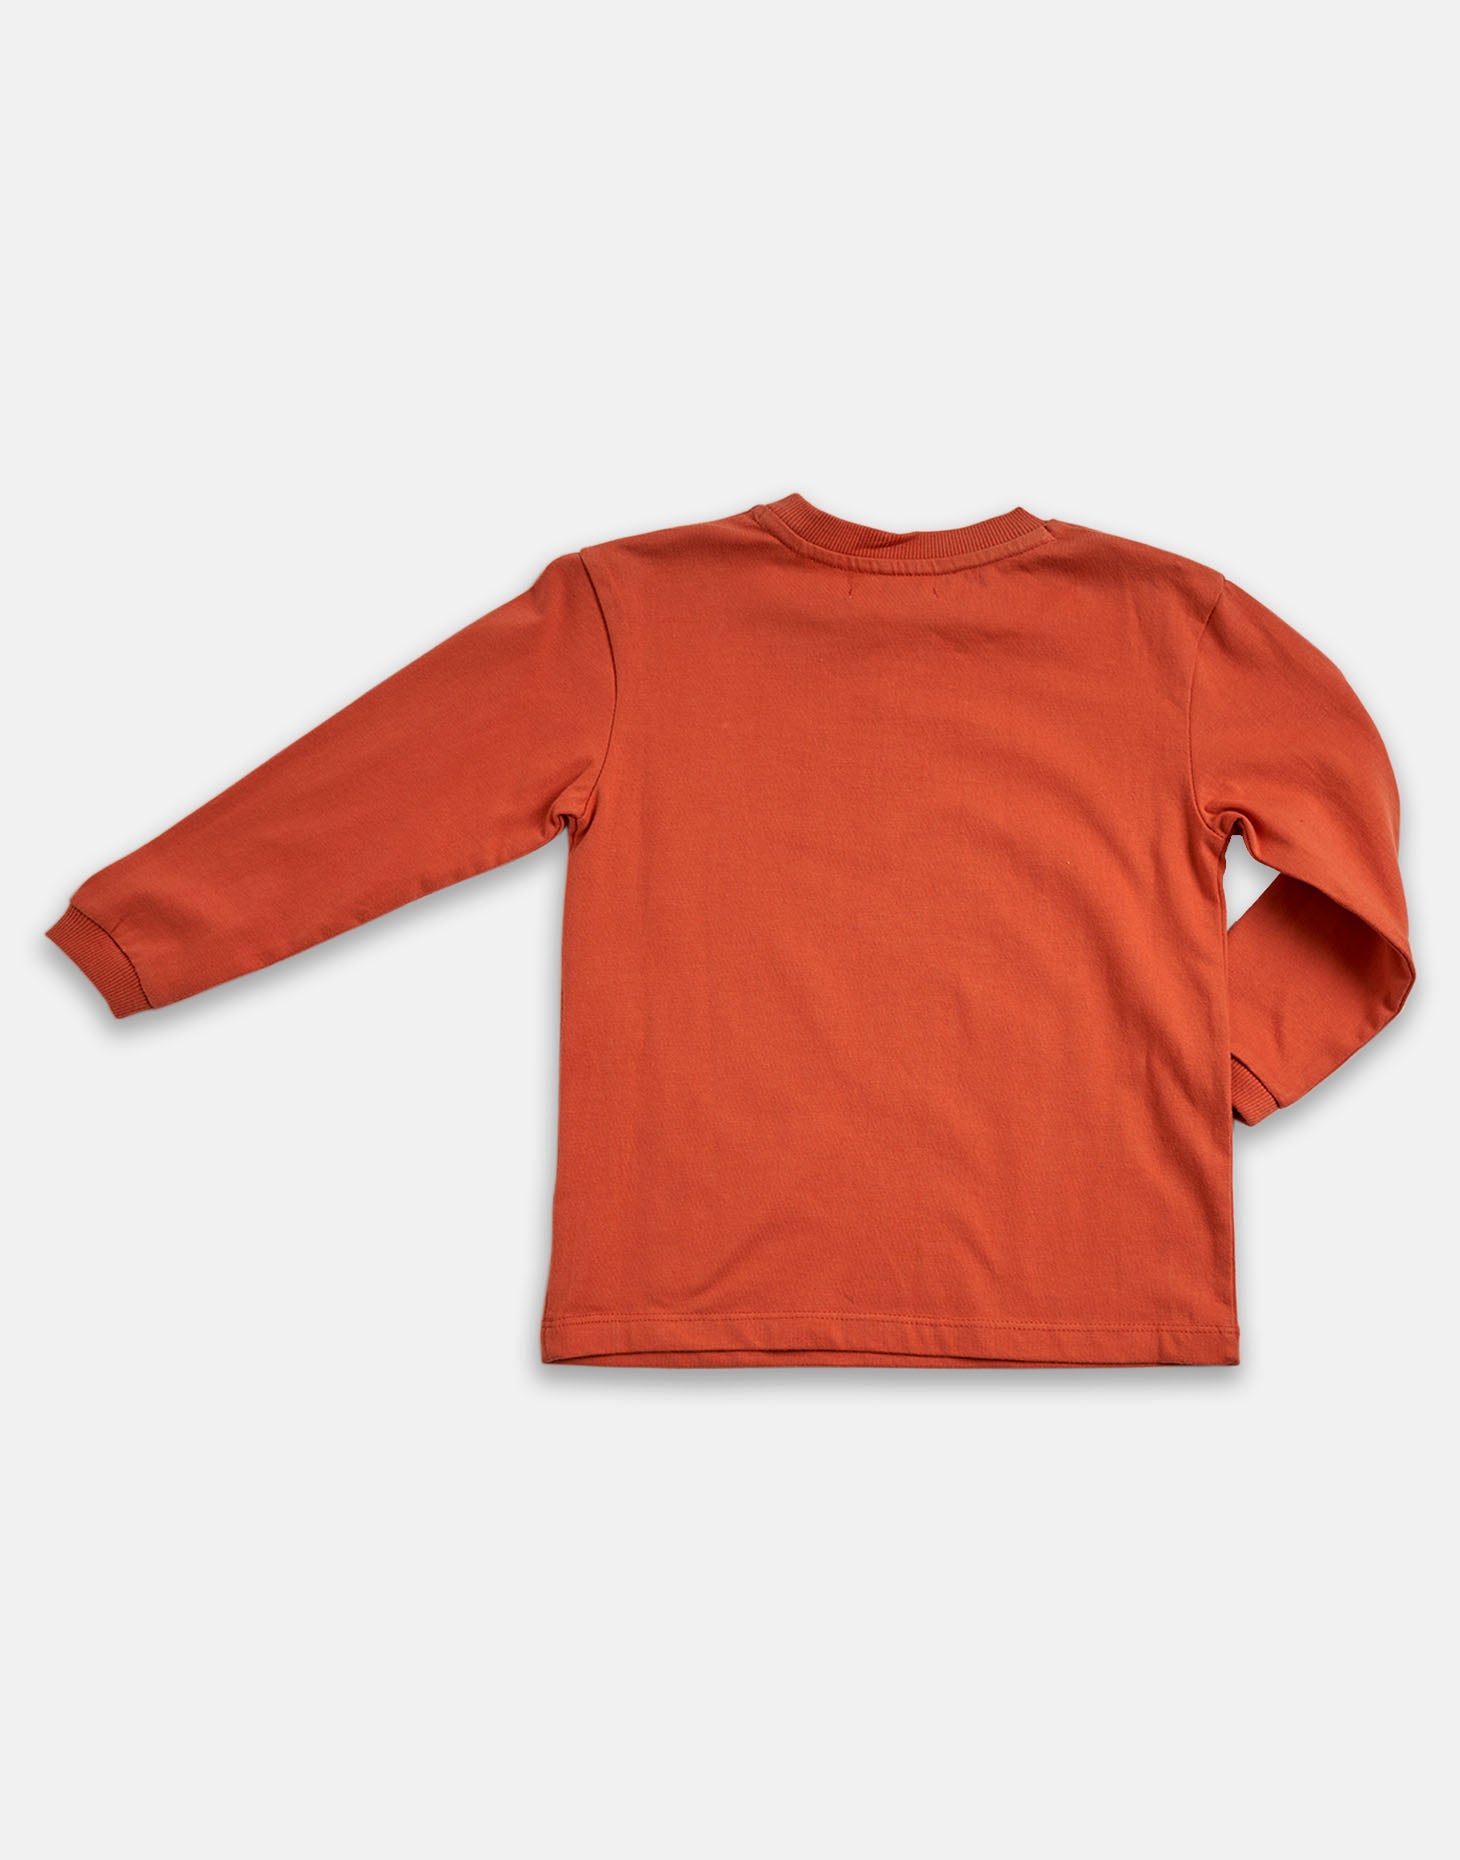 Boys Cotton Solid Brown Sweatshirt